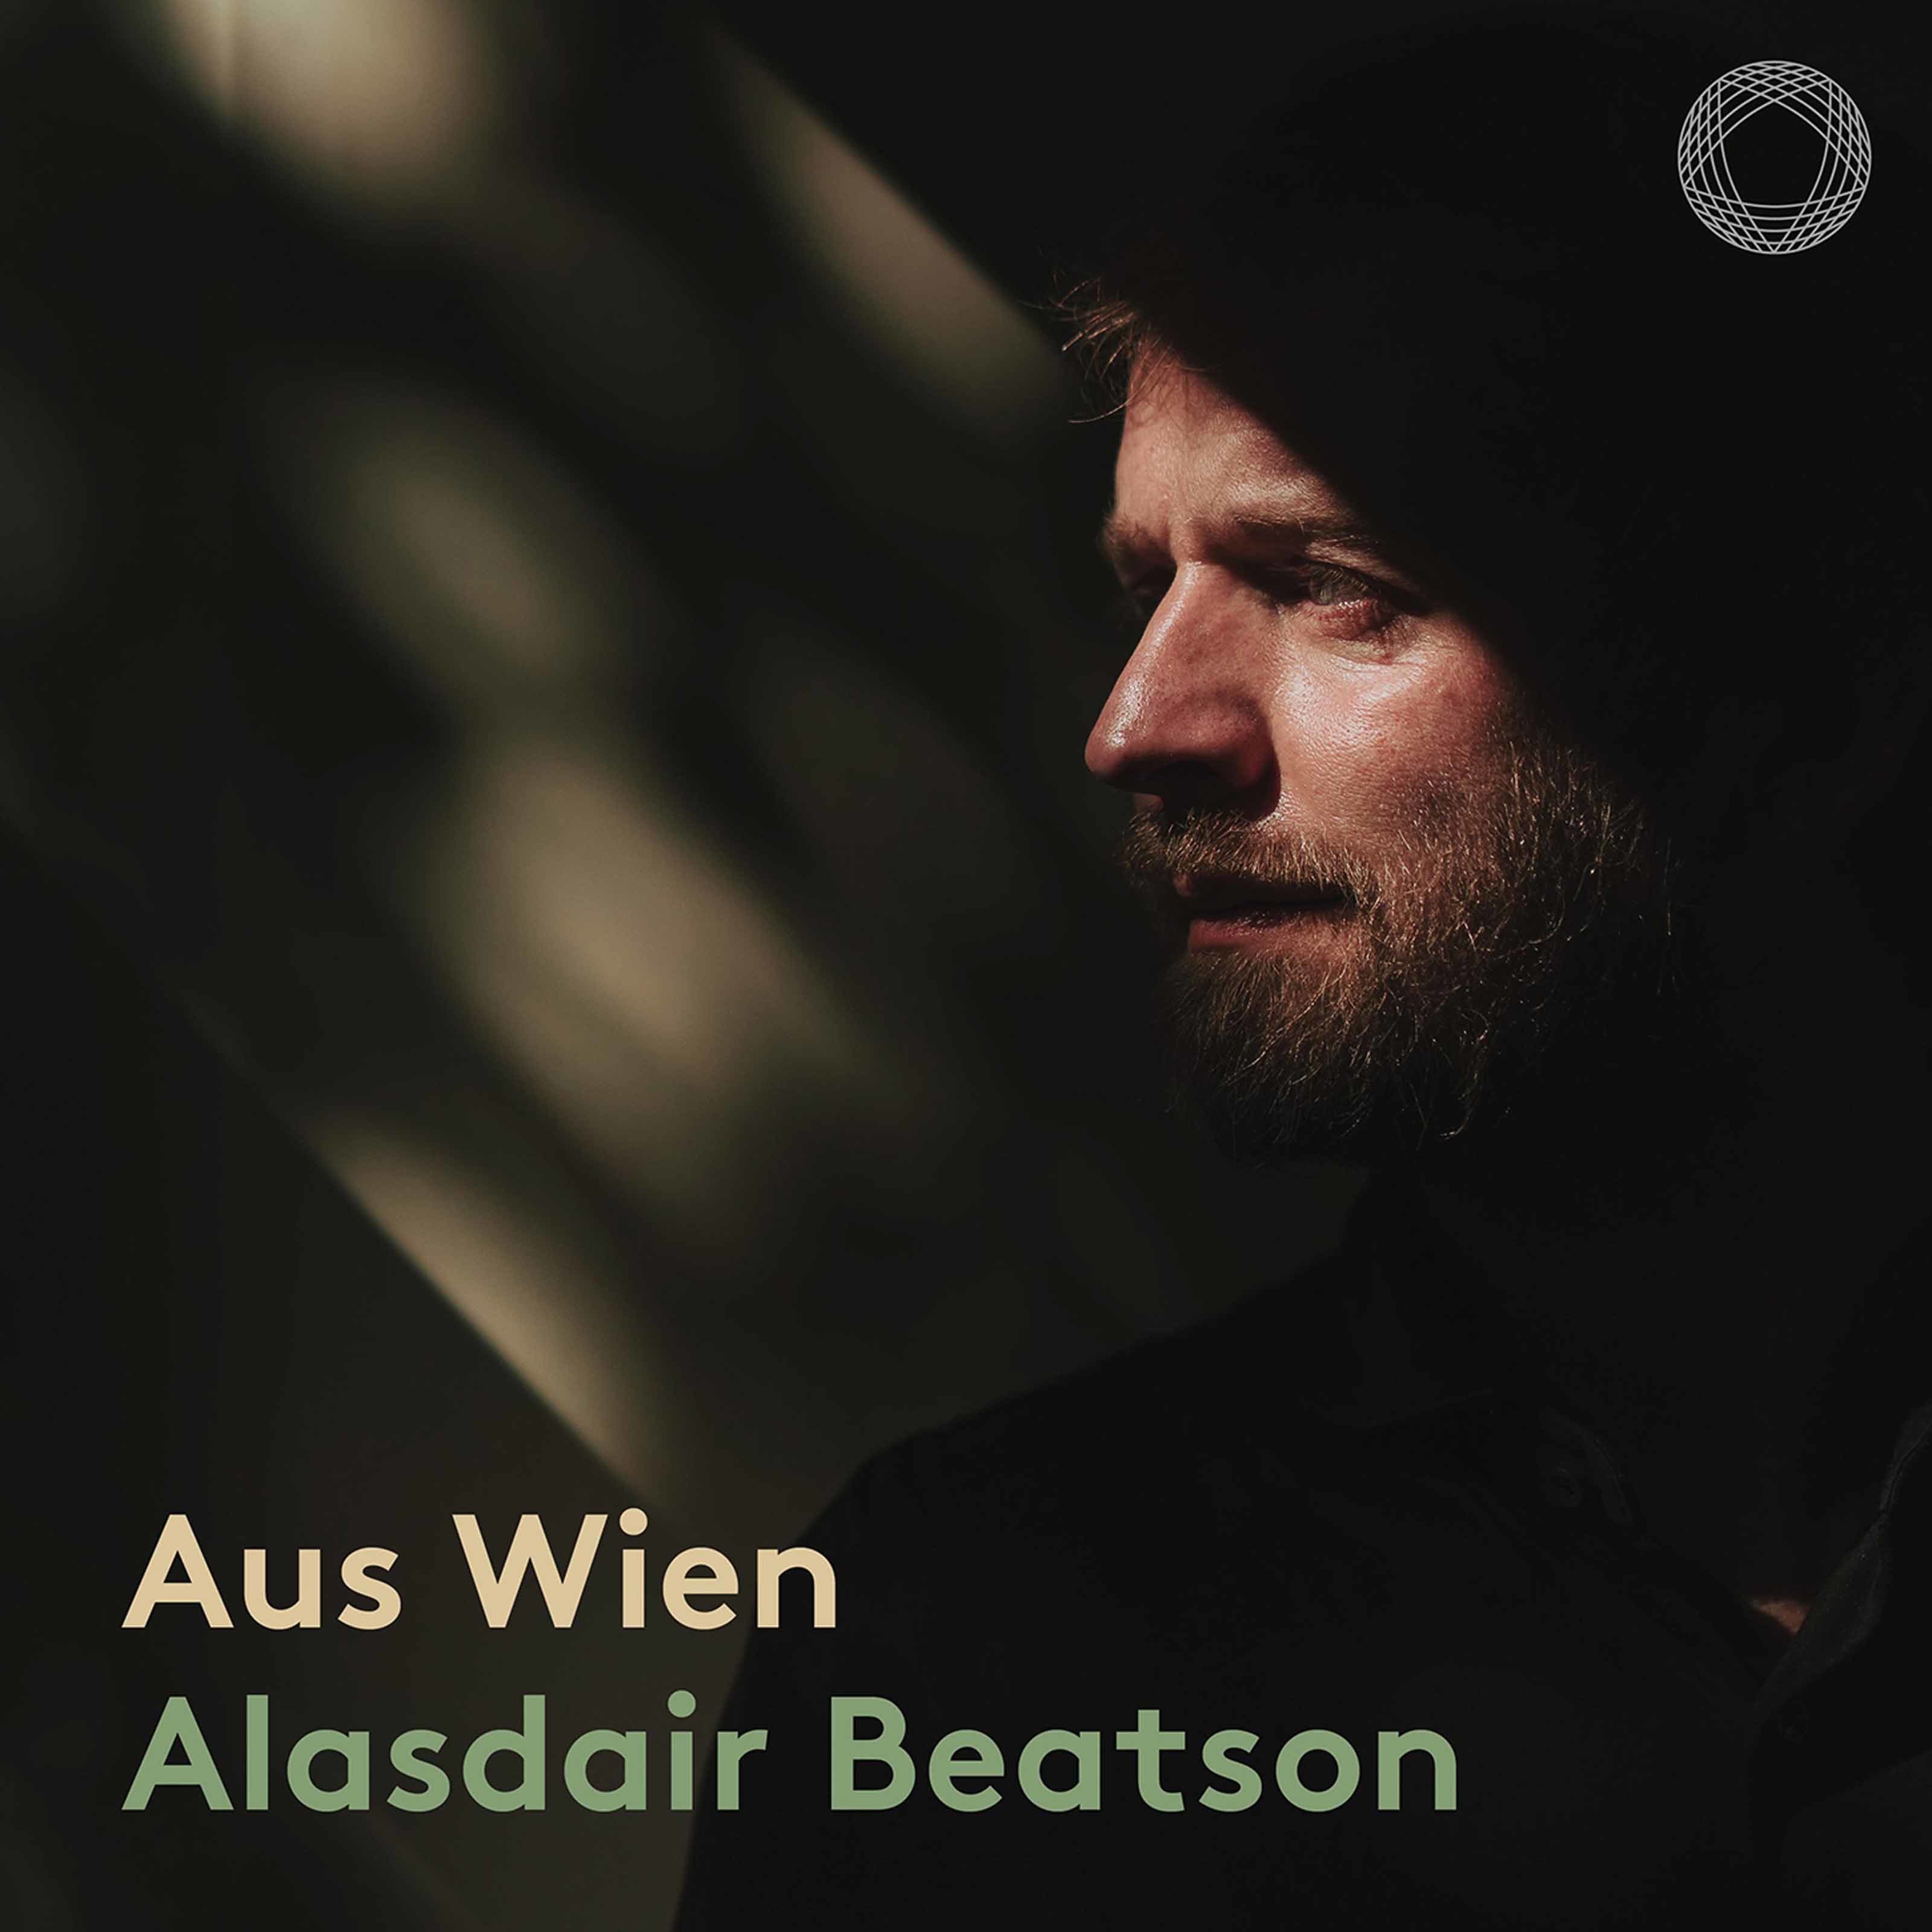 Alasdair Beatson - Aus Wien (2021) [FLAC 24bit/192kHz]